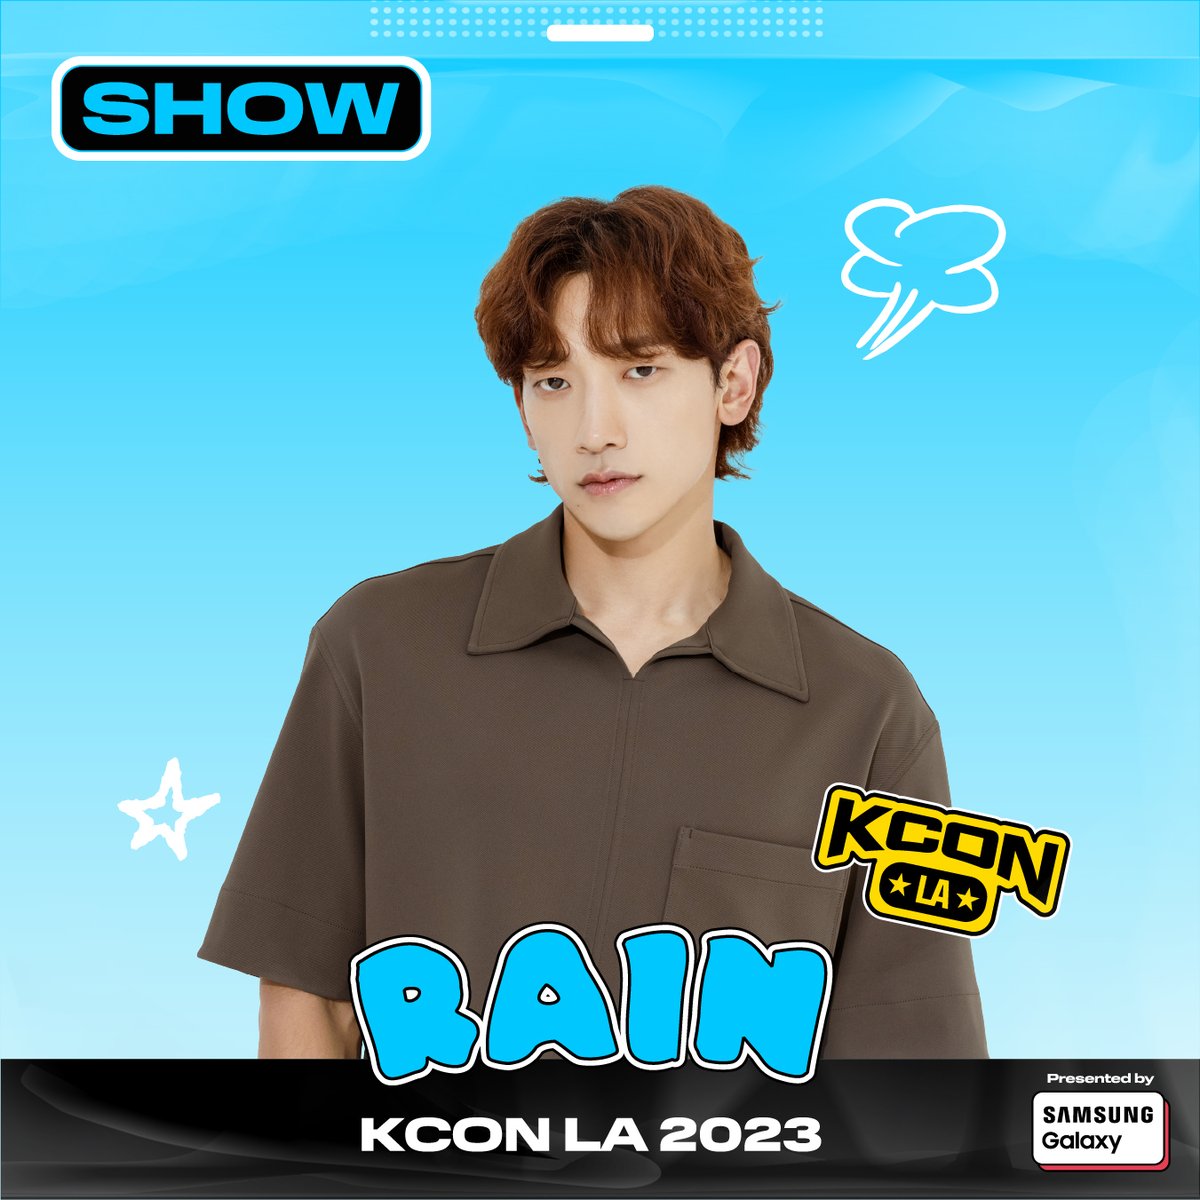 [ #KCONLA2023 ] ARTIST LINEUP

#RAIN

🎈 KCON LA 2023
8.18.~8.20.
Let’s #KCON!